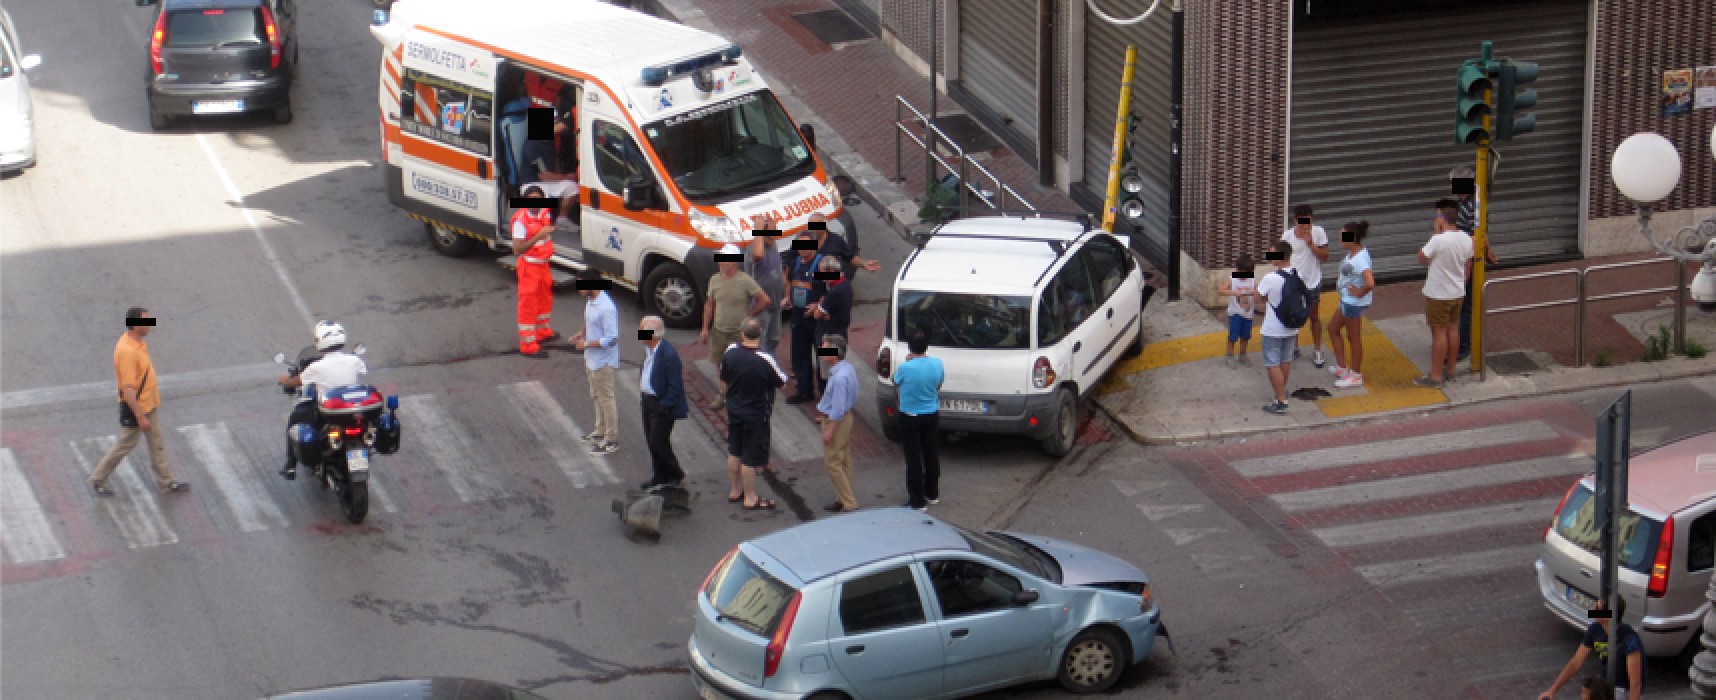 Nuovo incidente all’incrocio tra Via Aldo Moro e Via Petronelli, coinvolte due autovetture